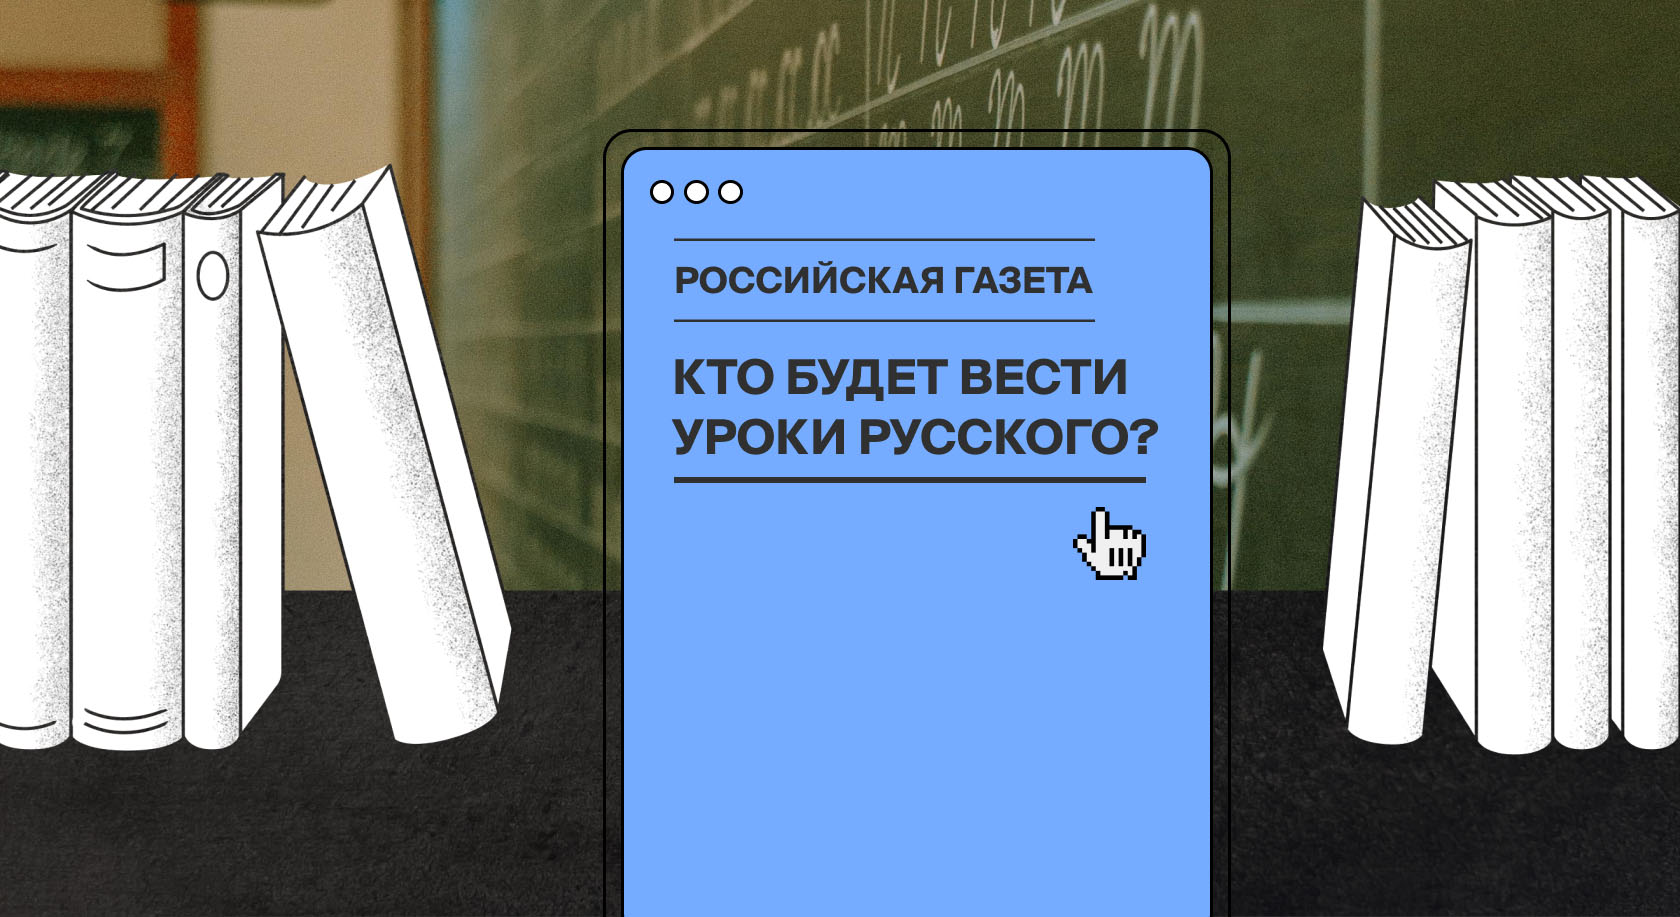 Систему образования ждет дефицит преподавателей русского языка